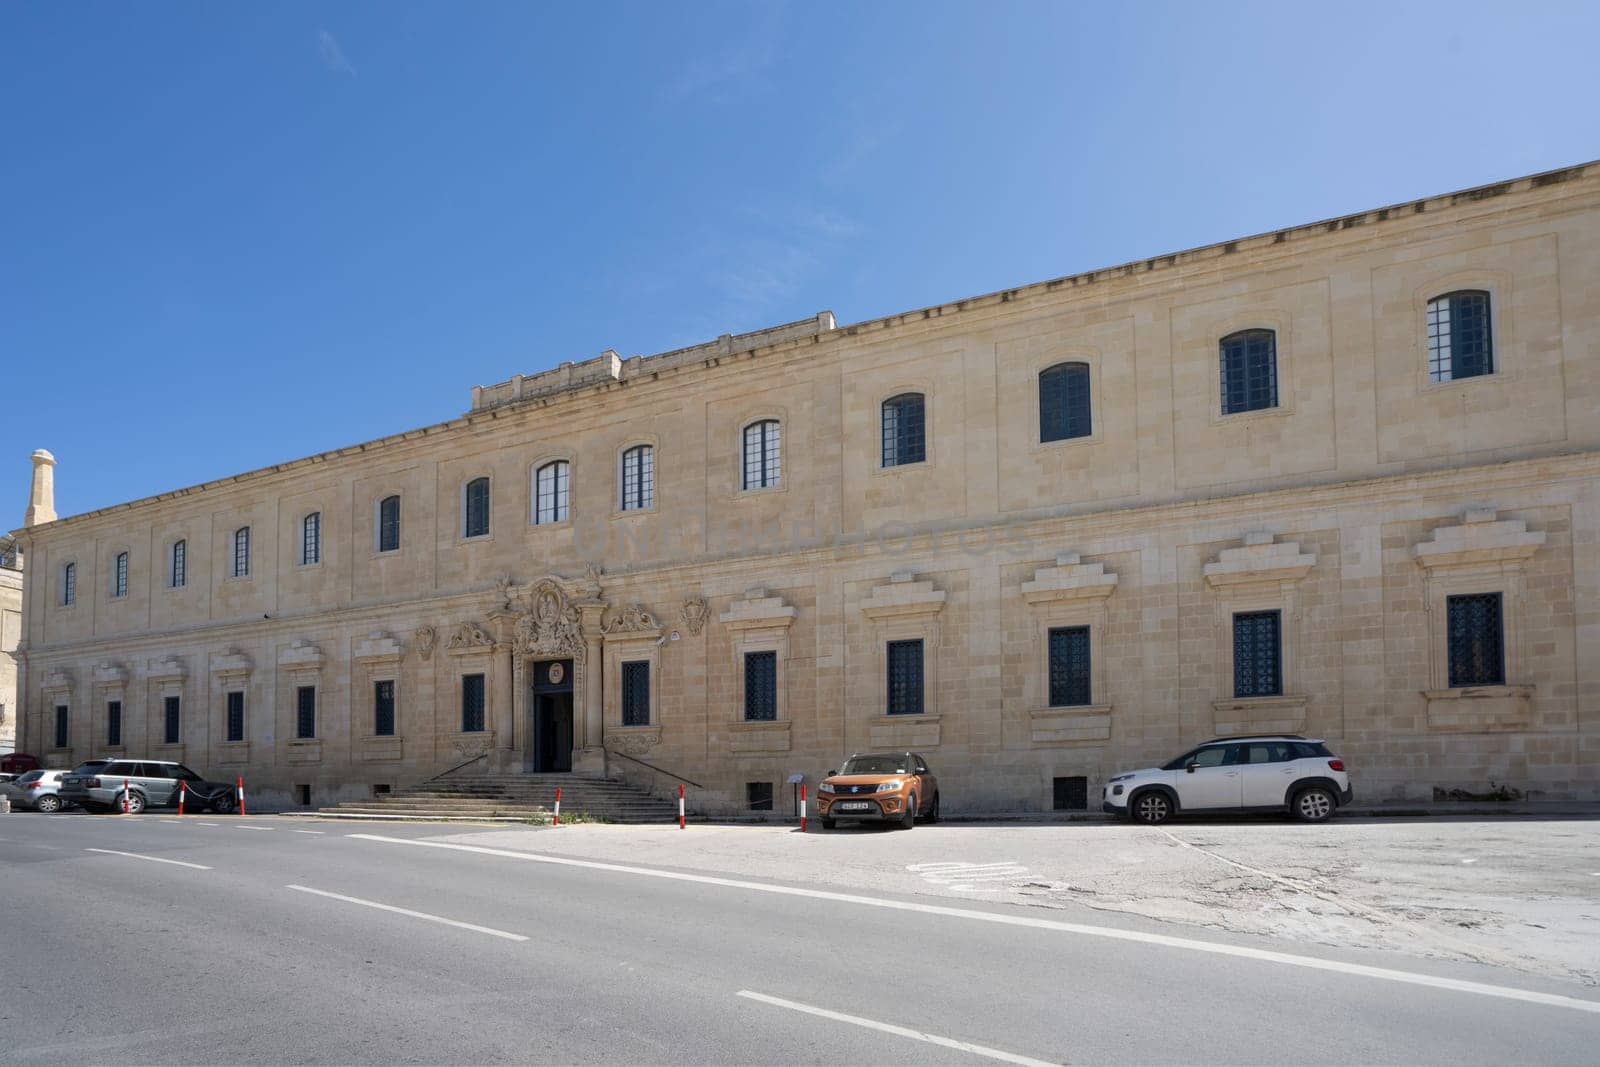 The Archbishop's Curia building in Valletta, Malta by sergiodv